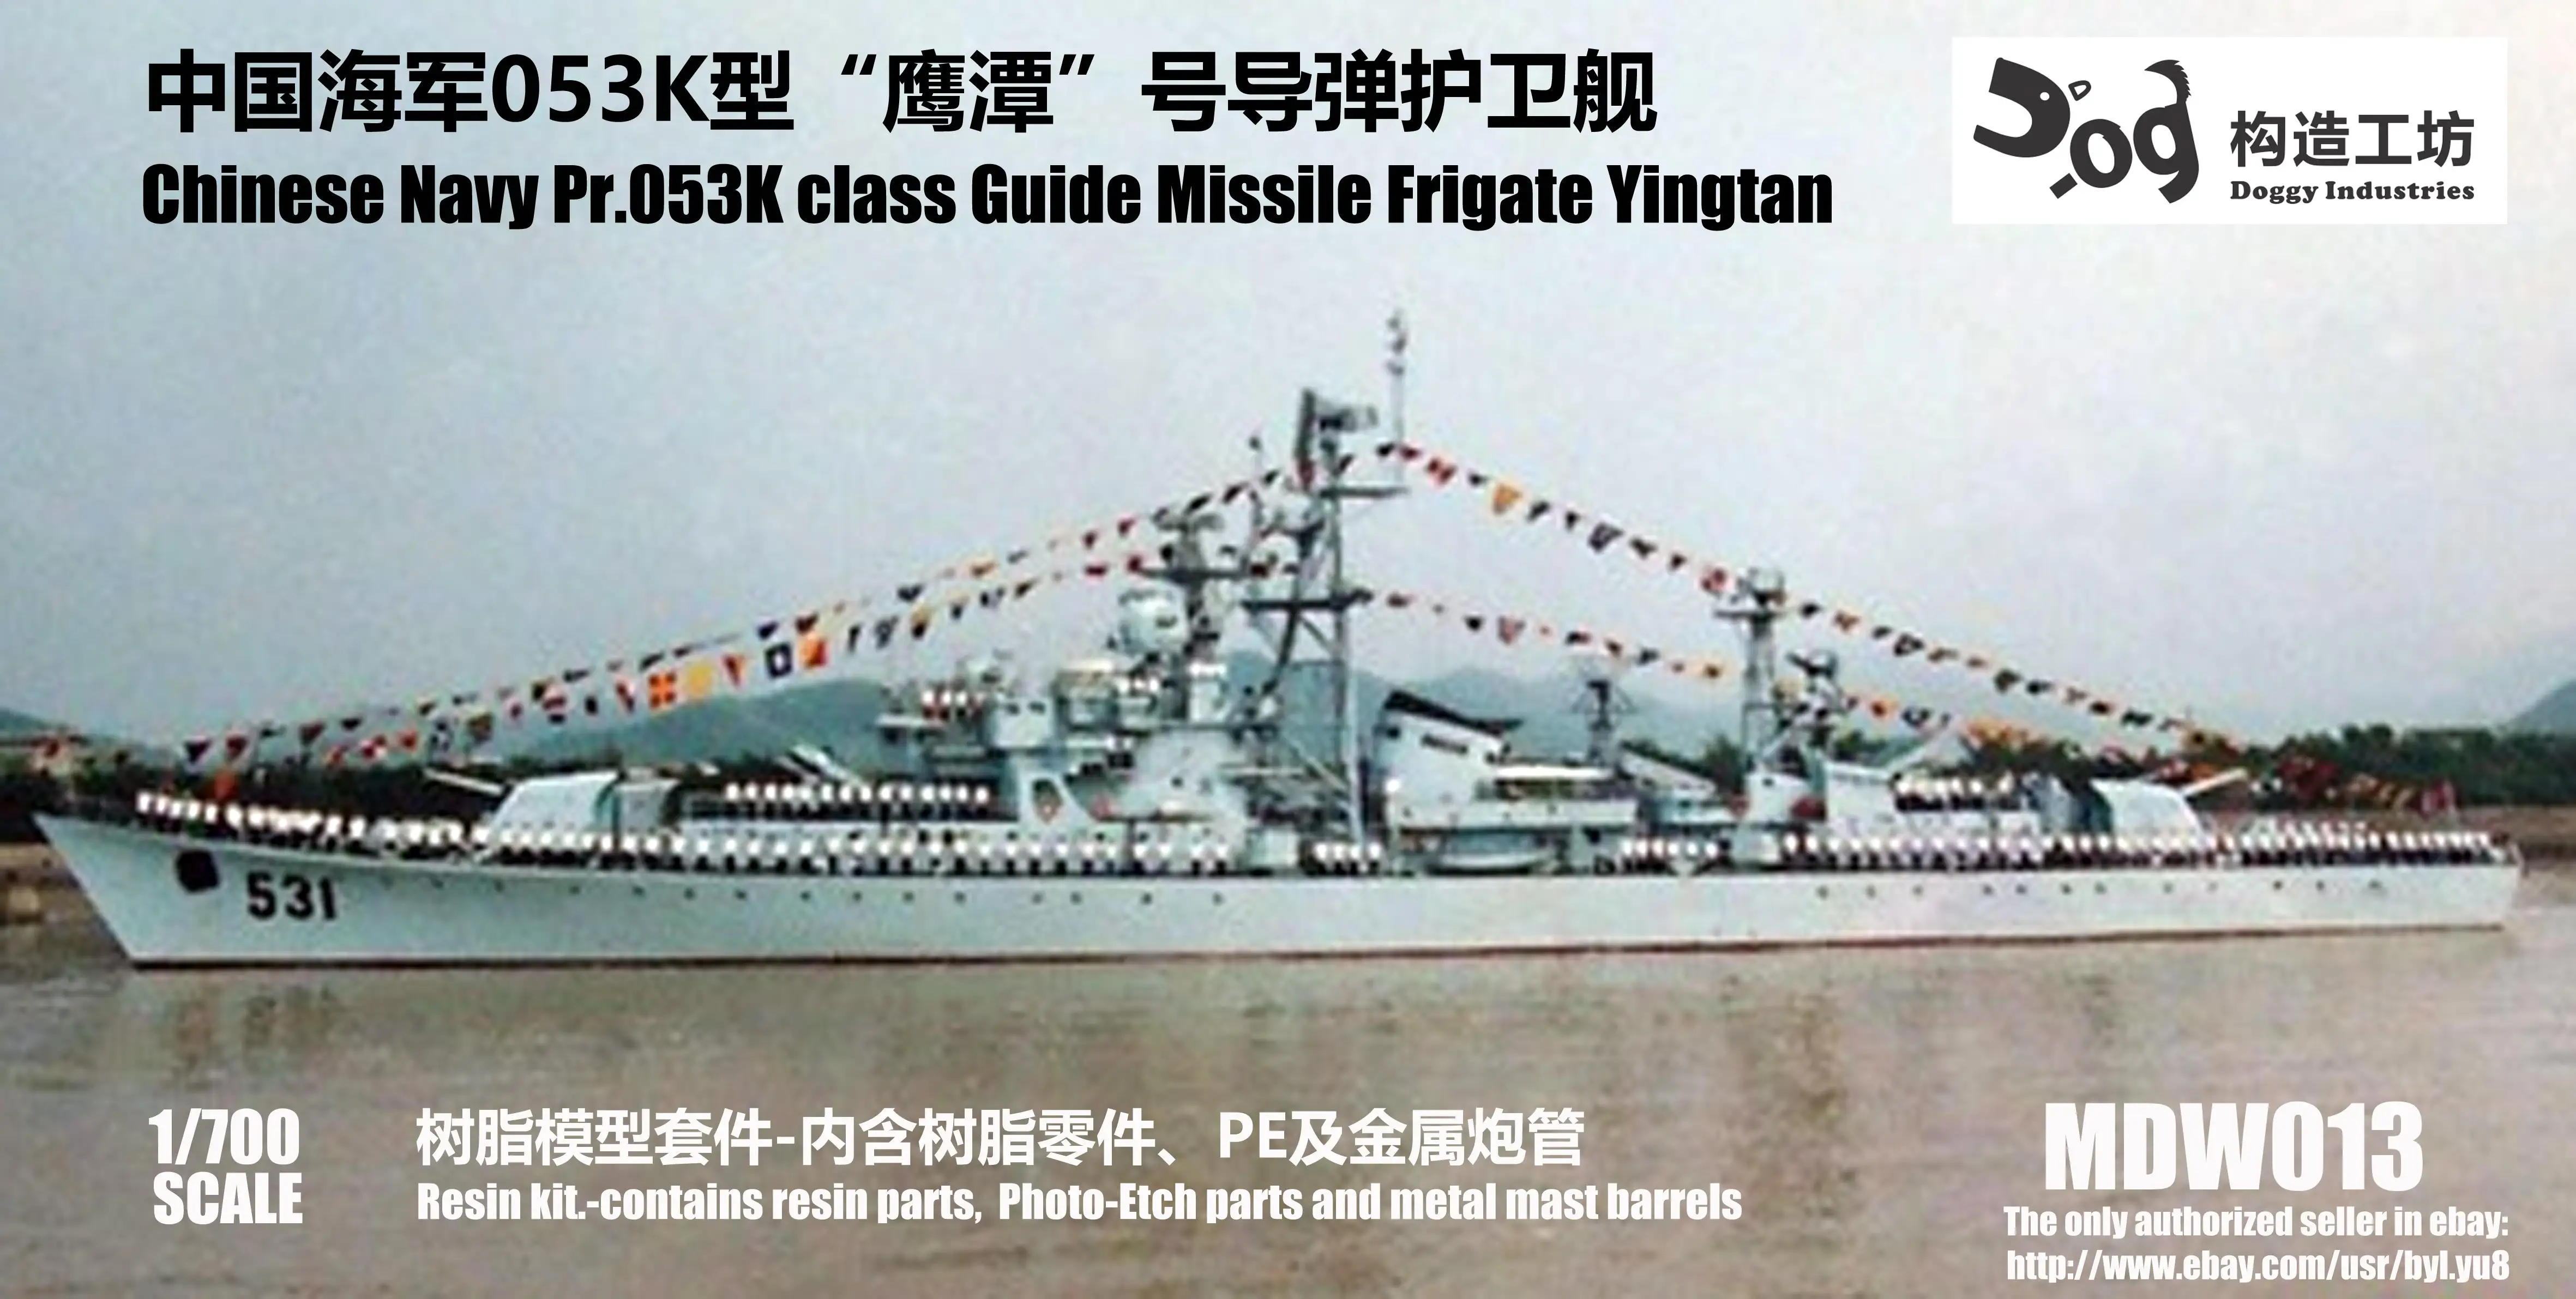 GOUZAO MDW-013 1/700 Ölçekli Çin Donanması Pr.053K sınıfı Kılavuz Füze Fırkateyni Yingtan